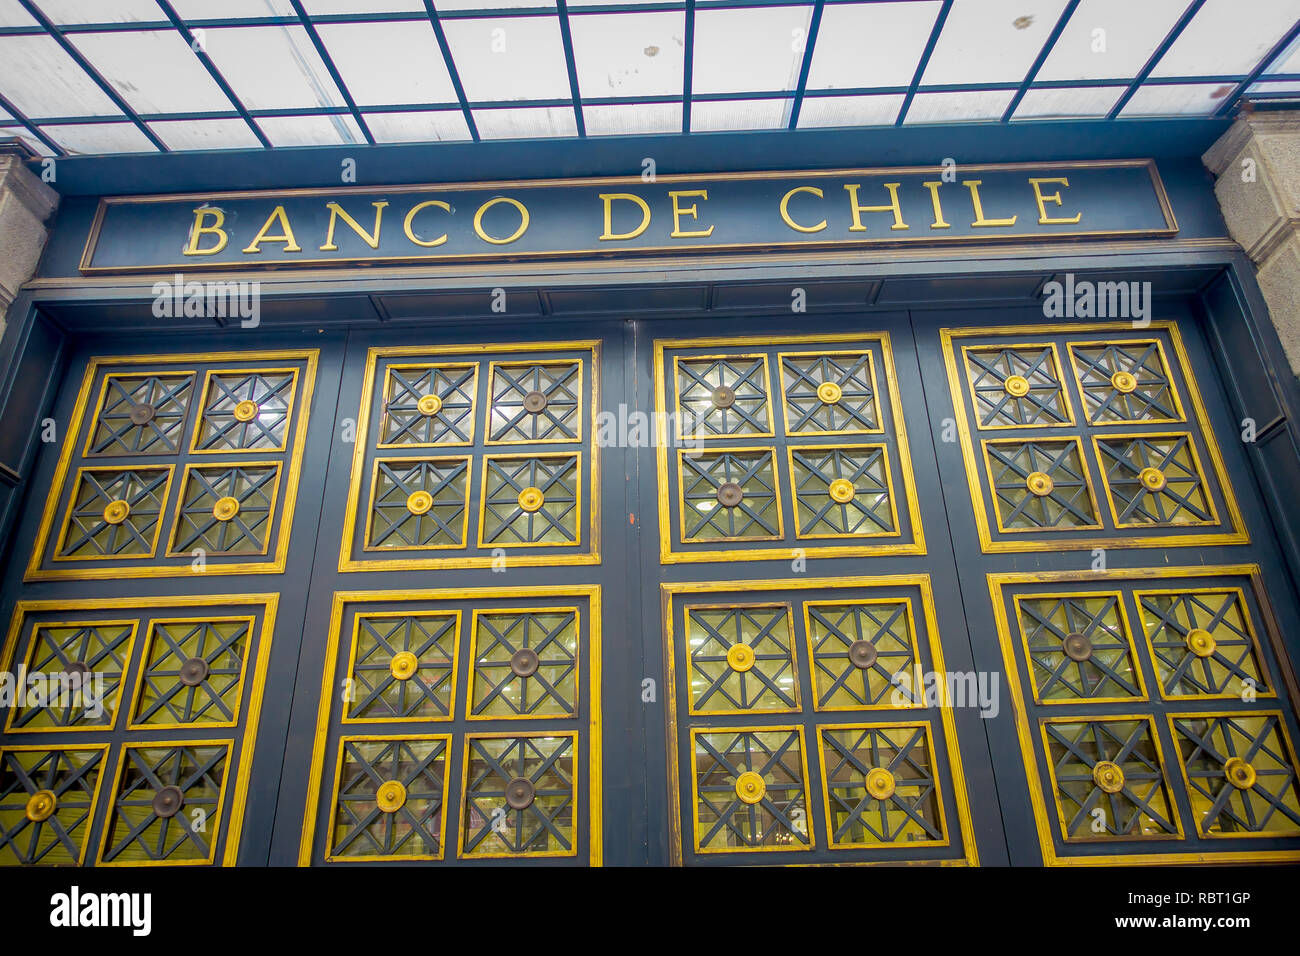 SANTIAGO, CHILI - 16 octobre 2018 : Banque du Chili à Santiago du Chili du bâtiment Banque D'Images